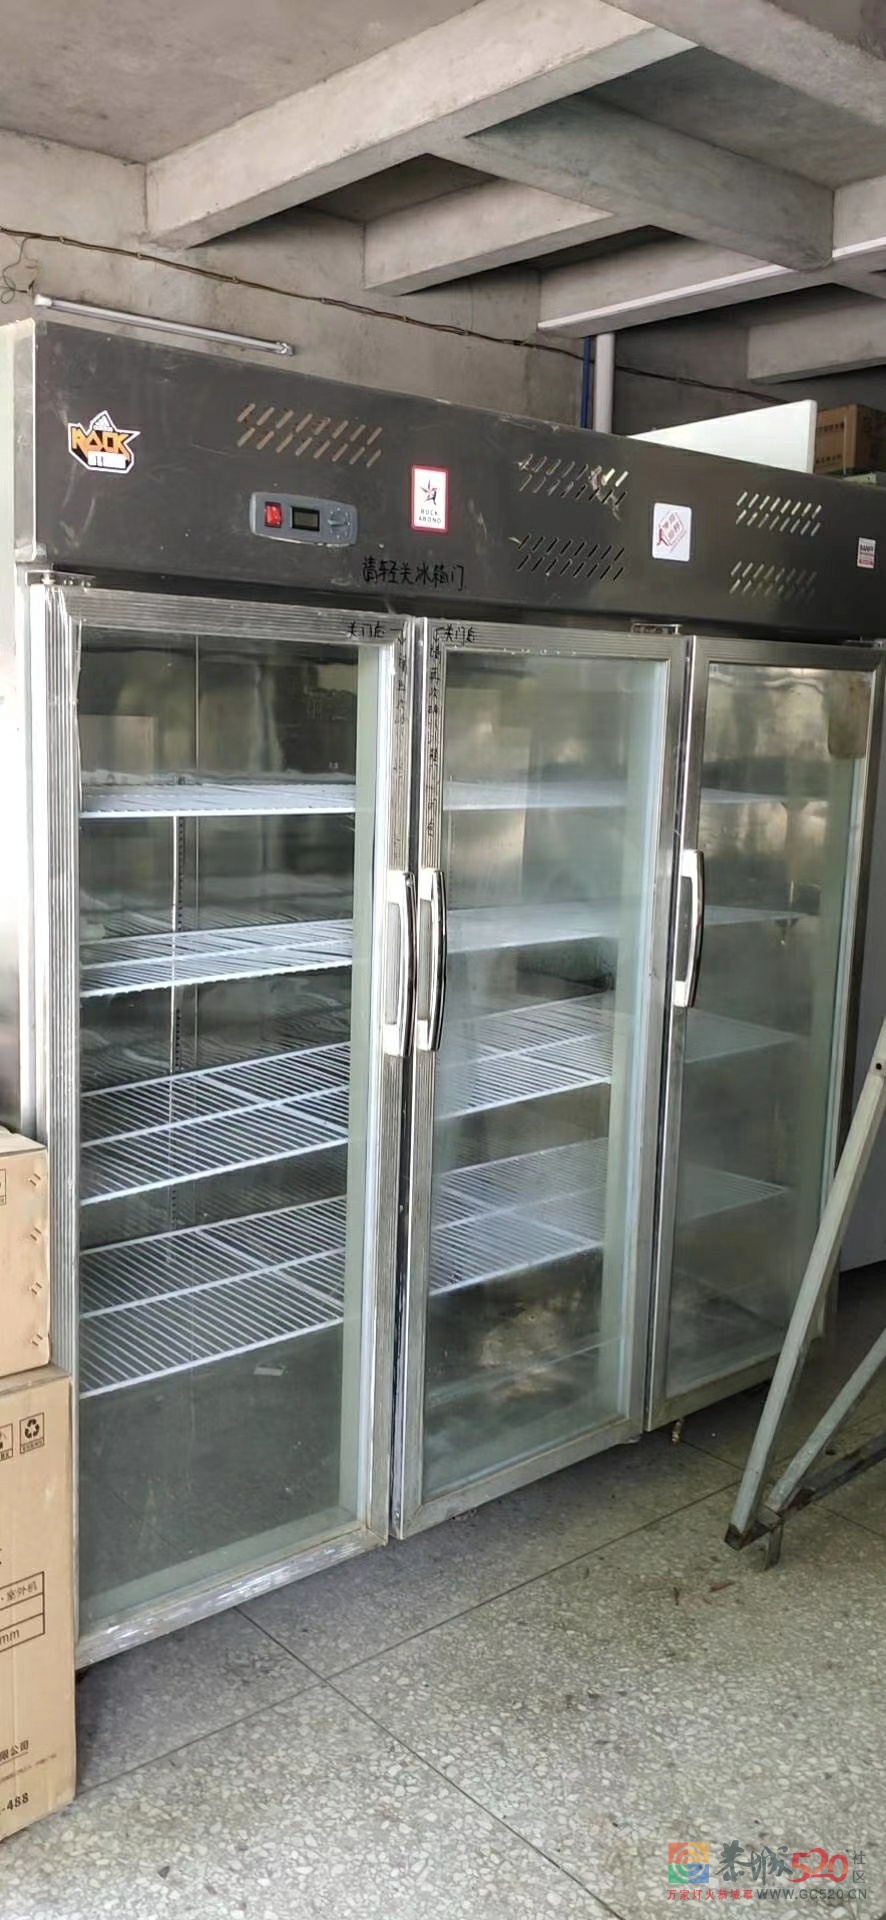 长期高价回收各种饭店食堂大排挡厨具设备冰箱空调及杂件721 / 作者:阿文89 / 帖子ID:277702